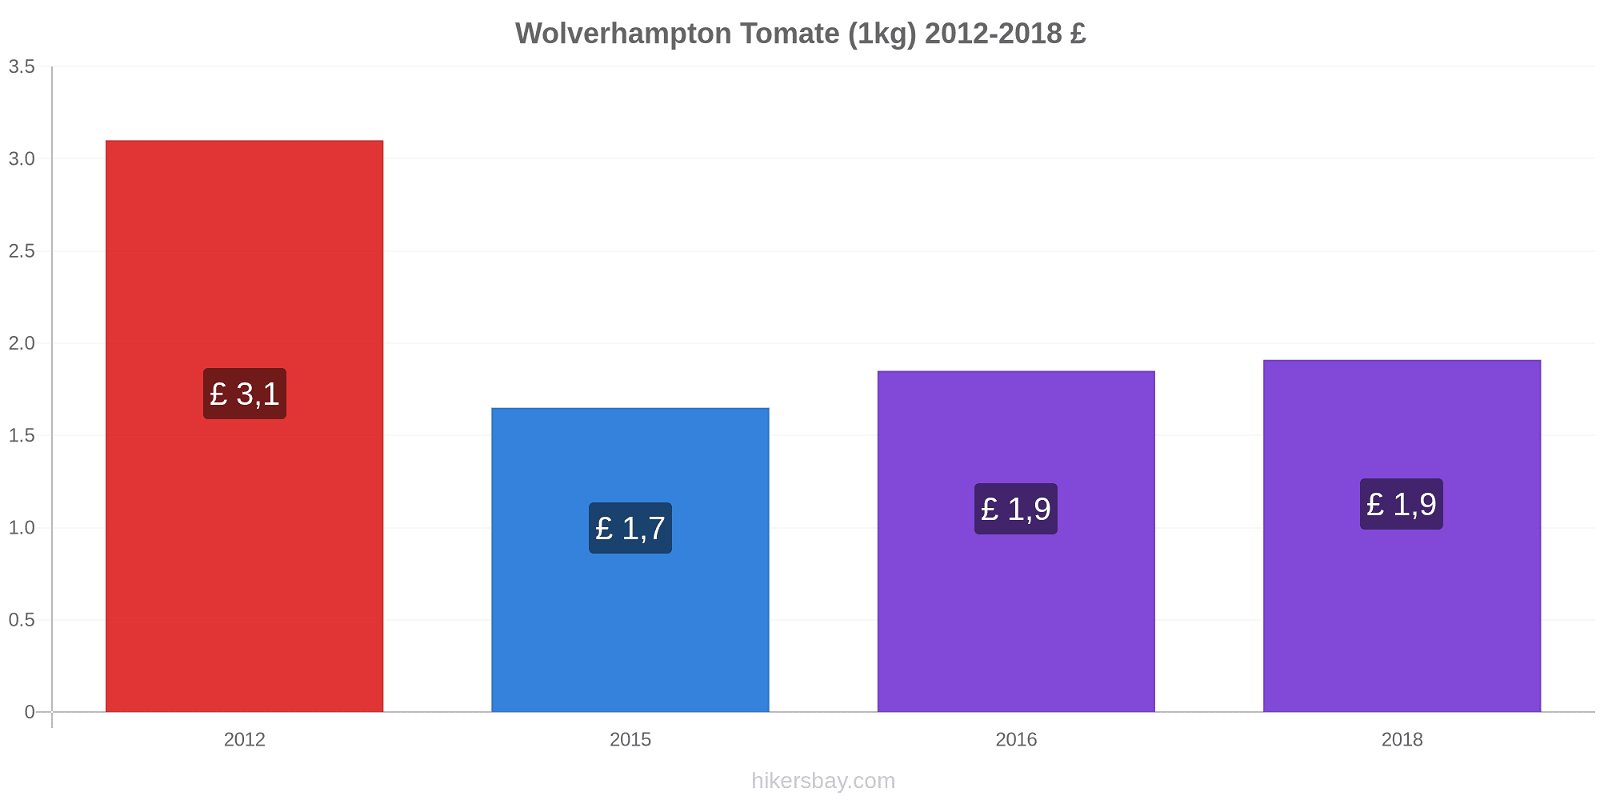 Wolverhampton variação de preço Tomate (1kg) hikersbay.com